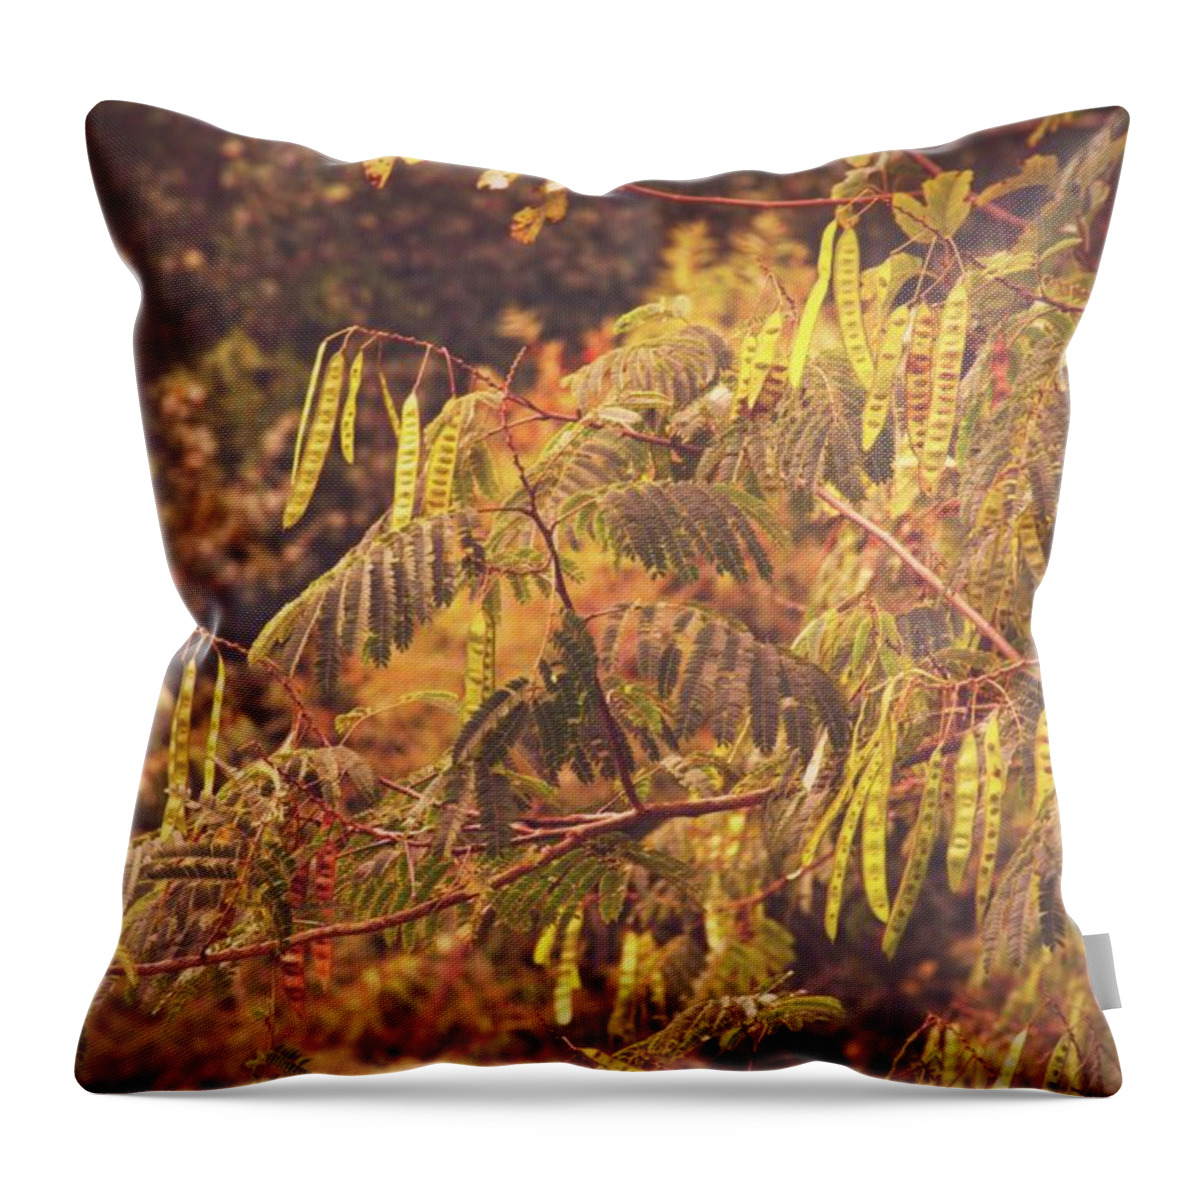 Persian Silk Tree Throw Pillow featuring the digital art Persian Silk Tree Vintage by Angie Tirado